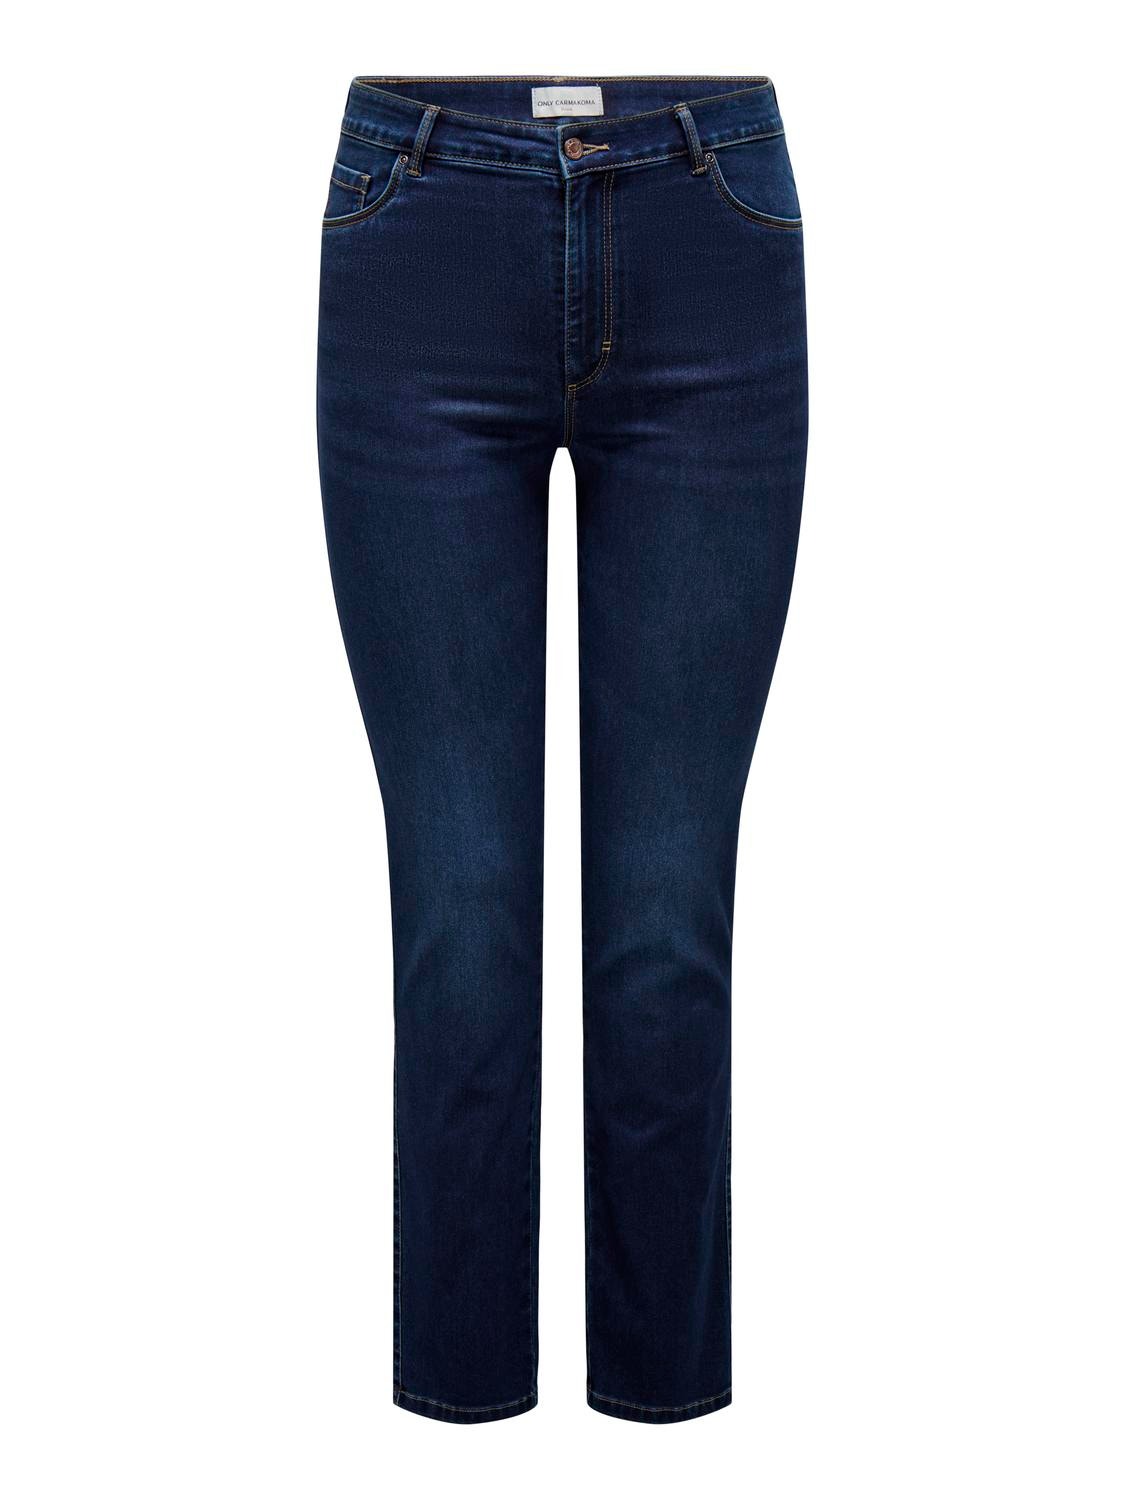 ONLY CARAUGUSTA High Waist STRAIGHT Jeans -Dark Blue Denim - 15300925